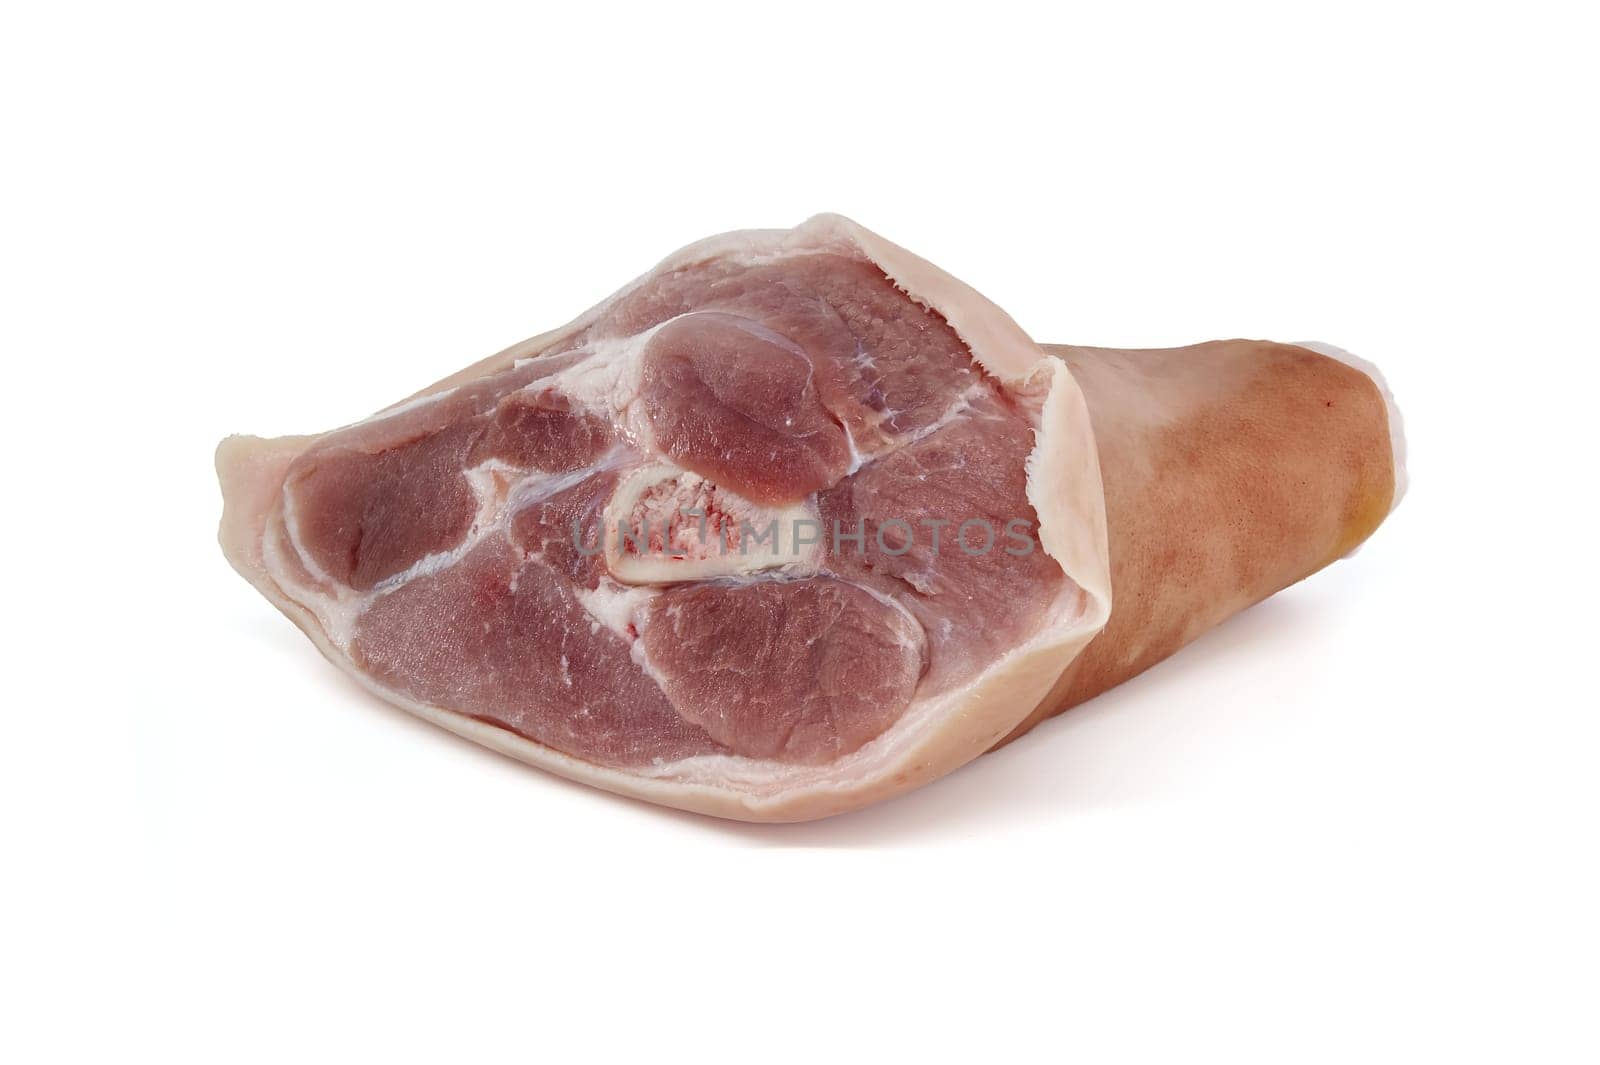 Fresh raw pork shank isolated on white background